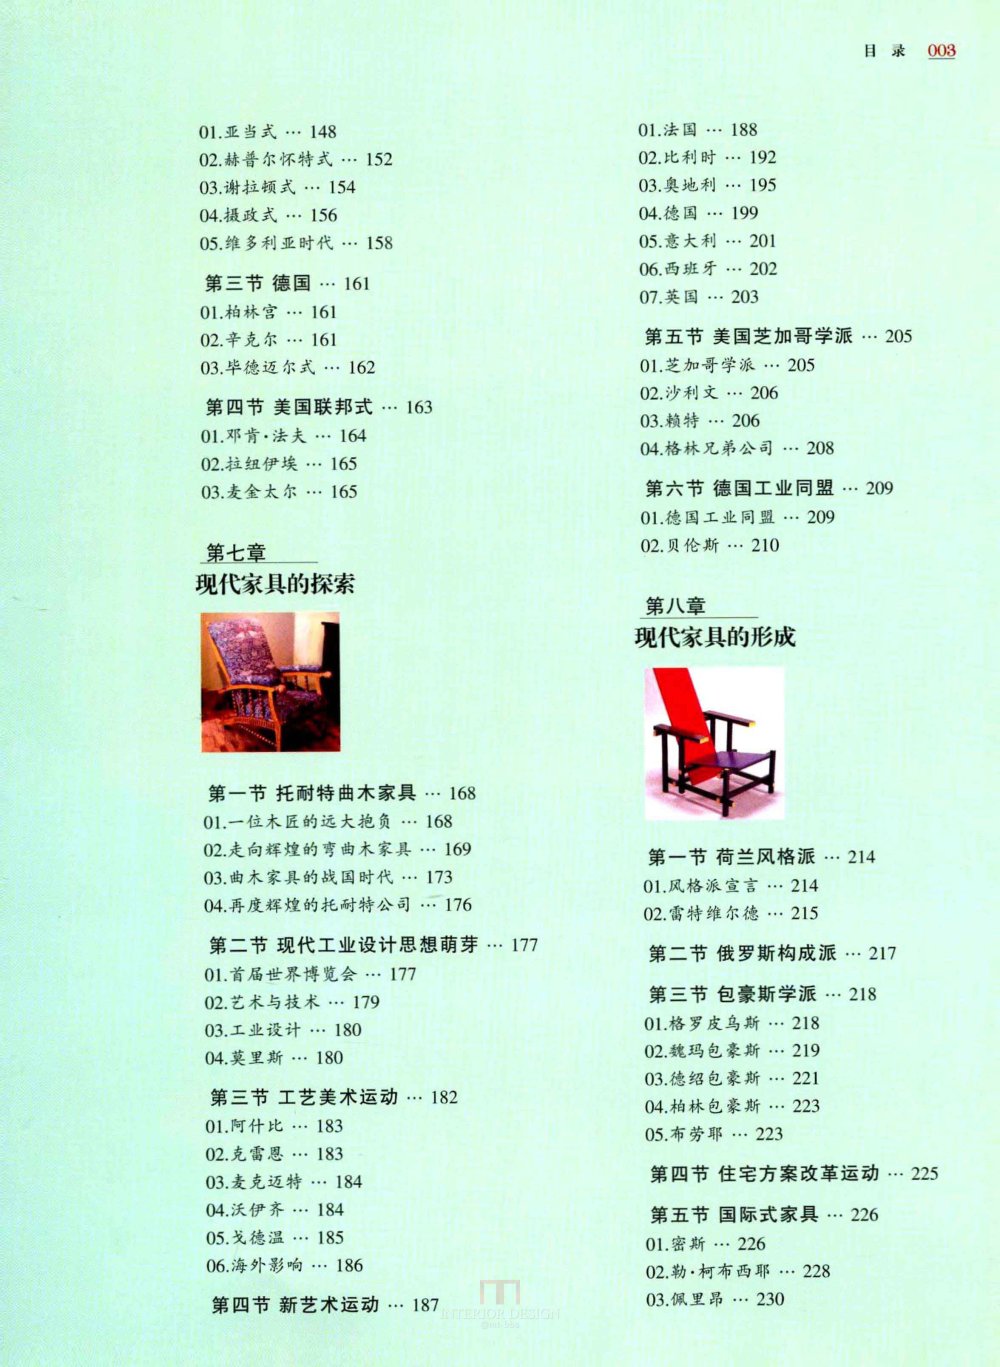 【RZ130】西方家具集成  一部风格、品牌、...._页面_008.jpg